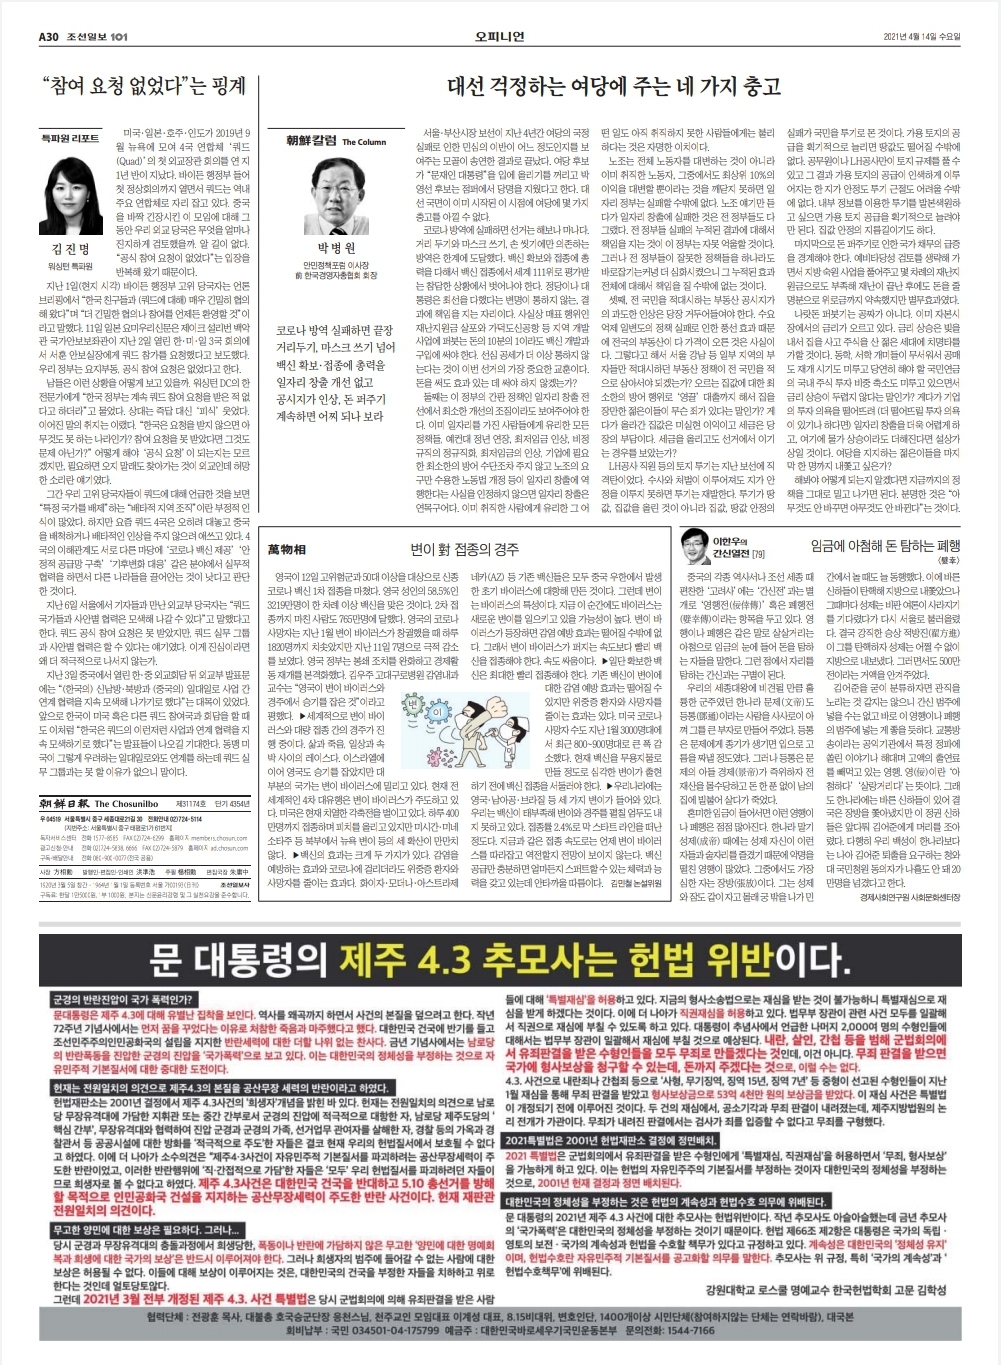 조선일보 광고 (3).jpeg